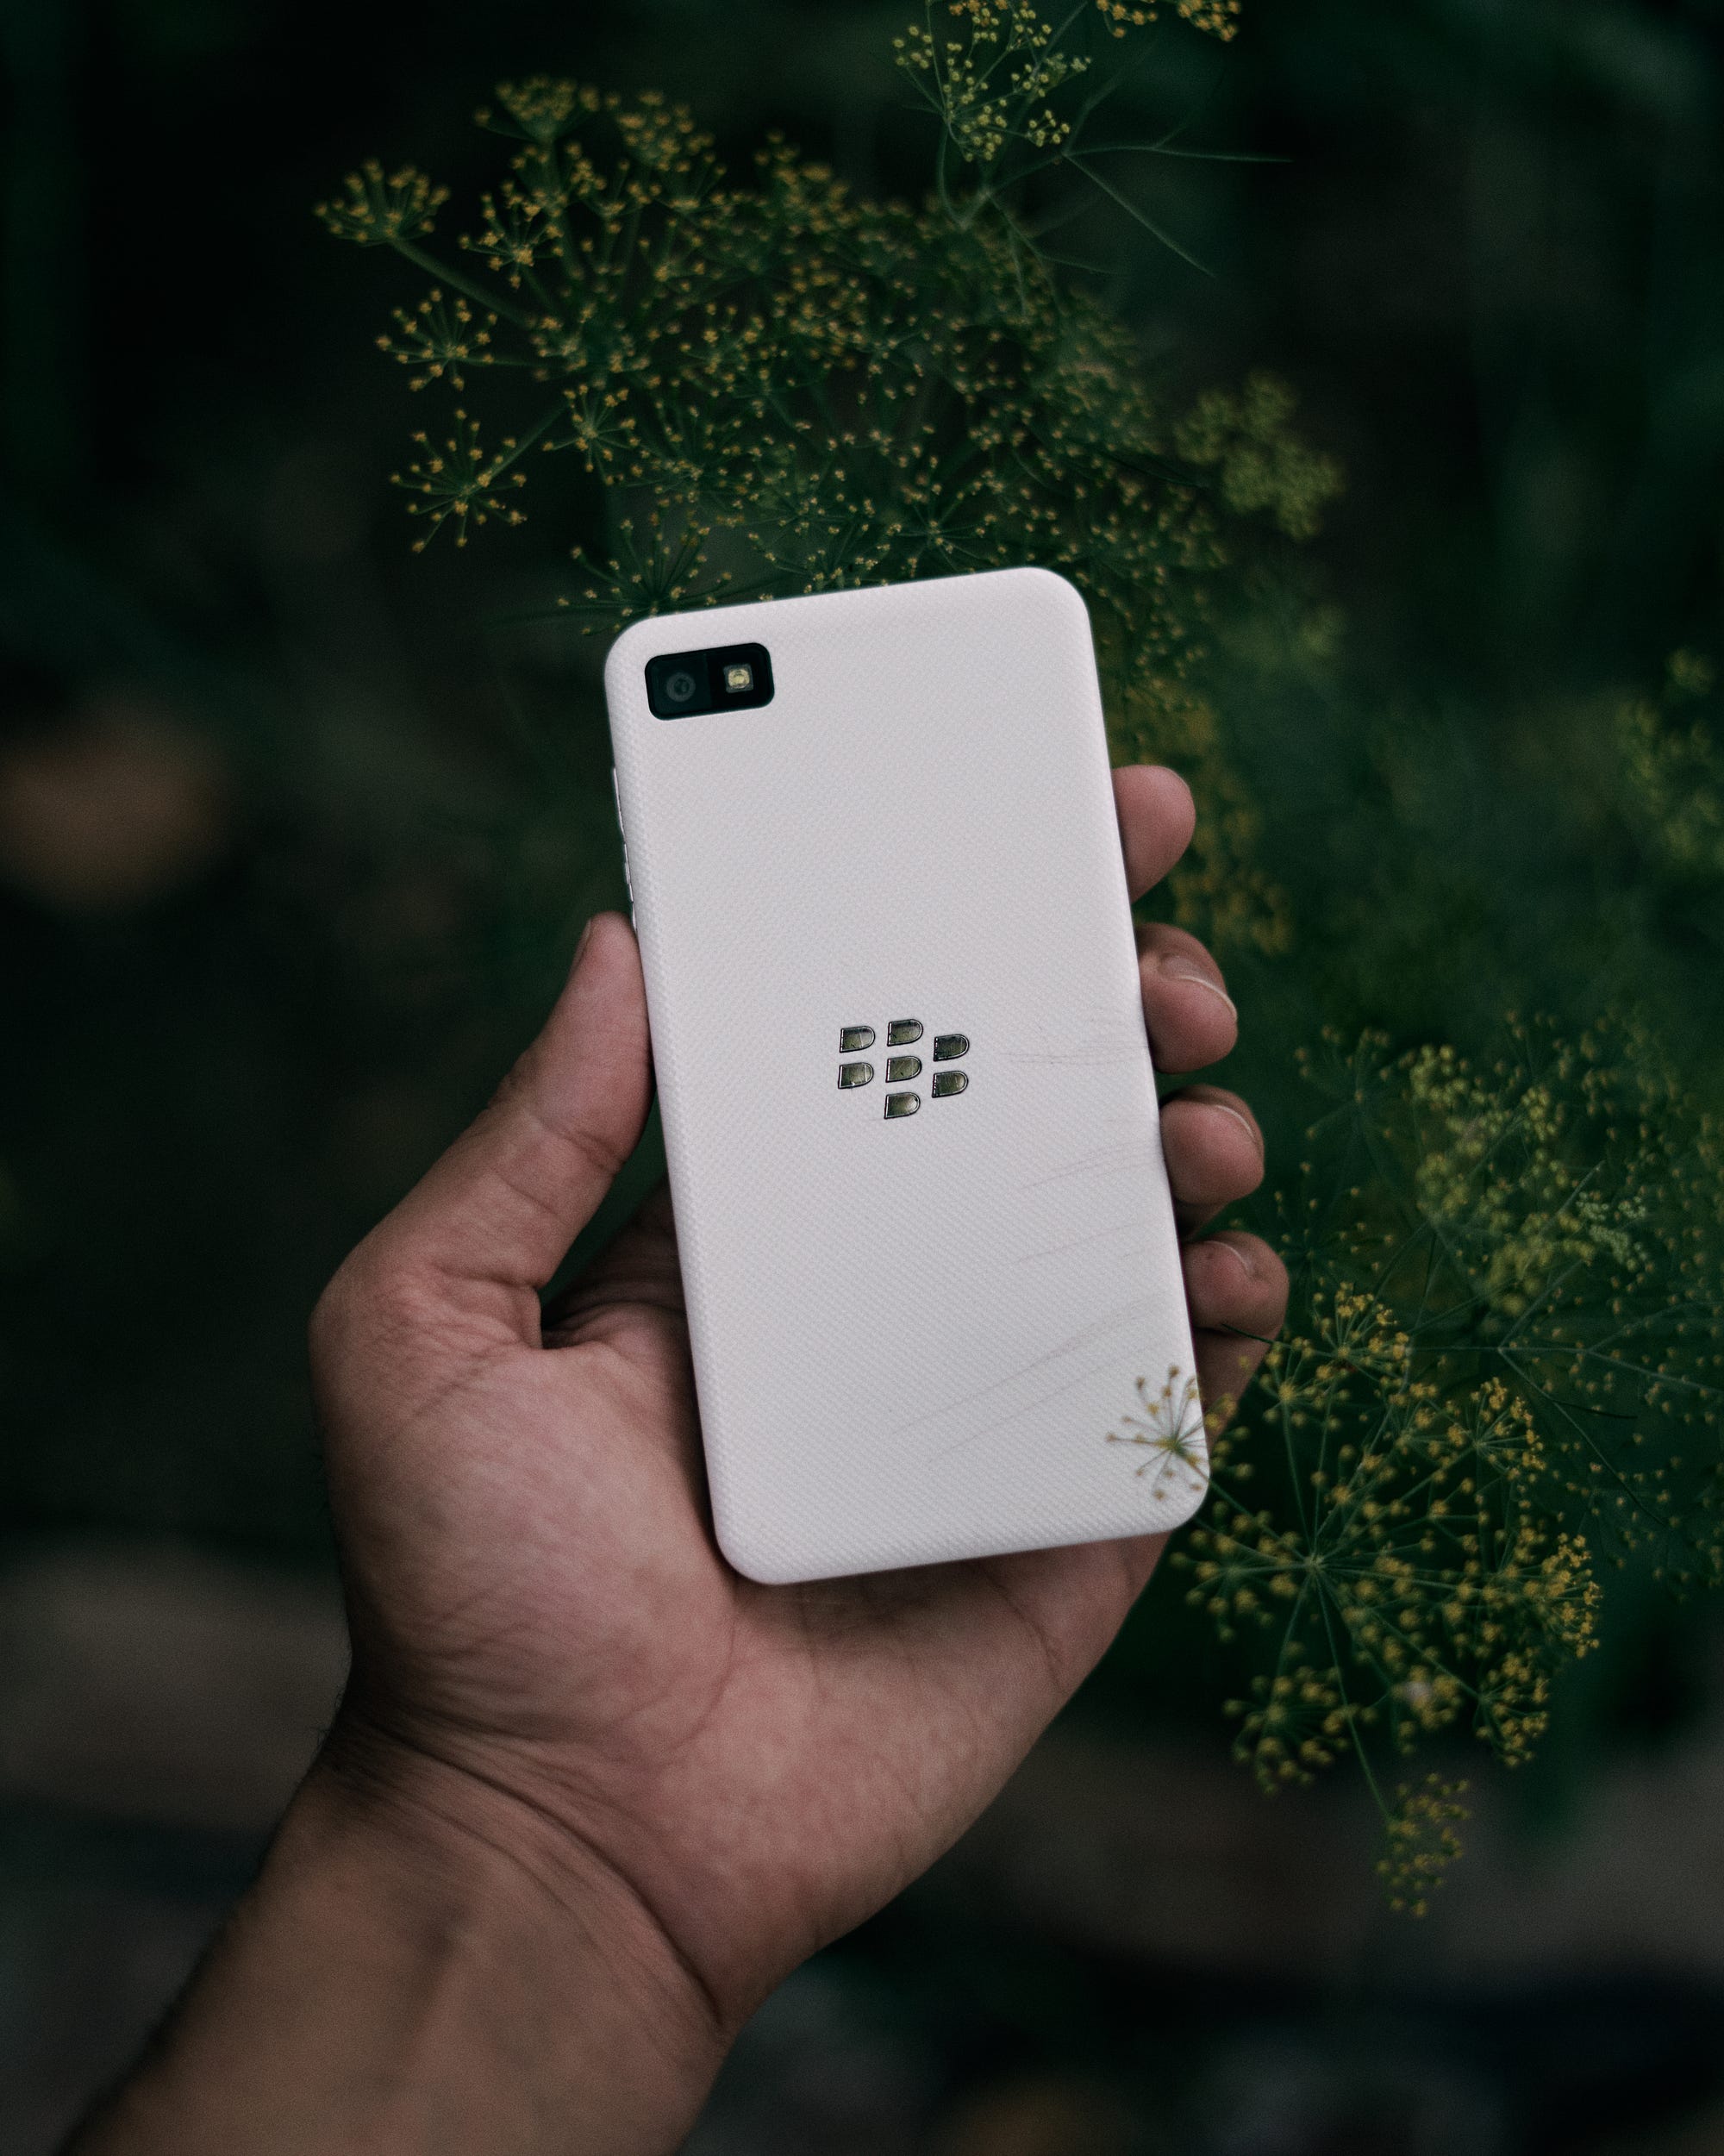 blackberry z10 white vs iphone 5